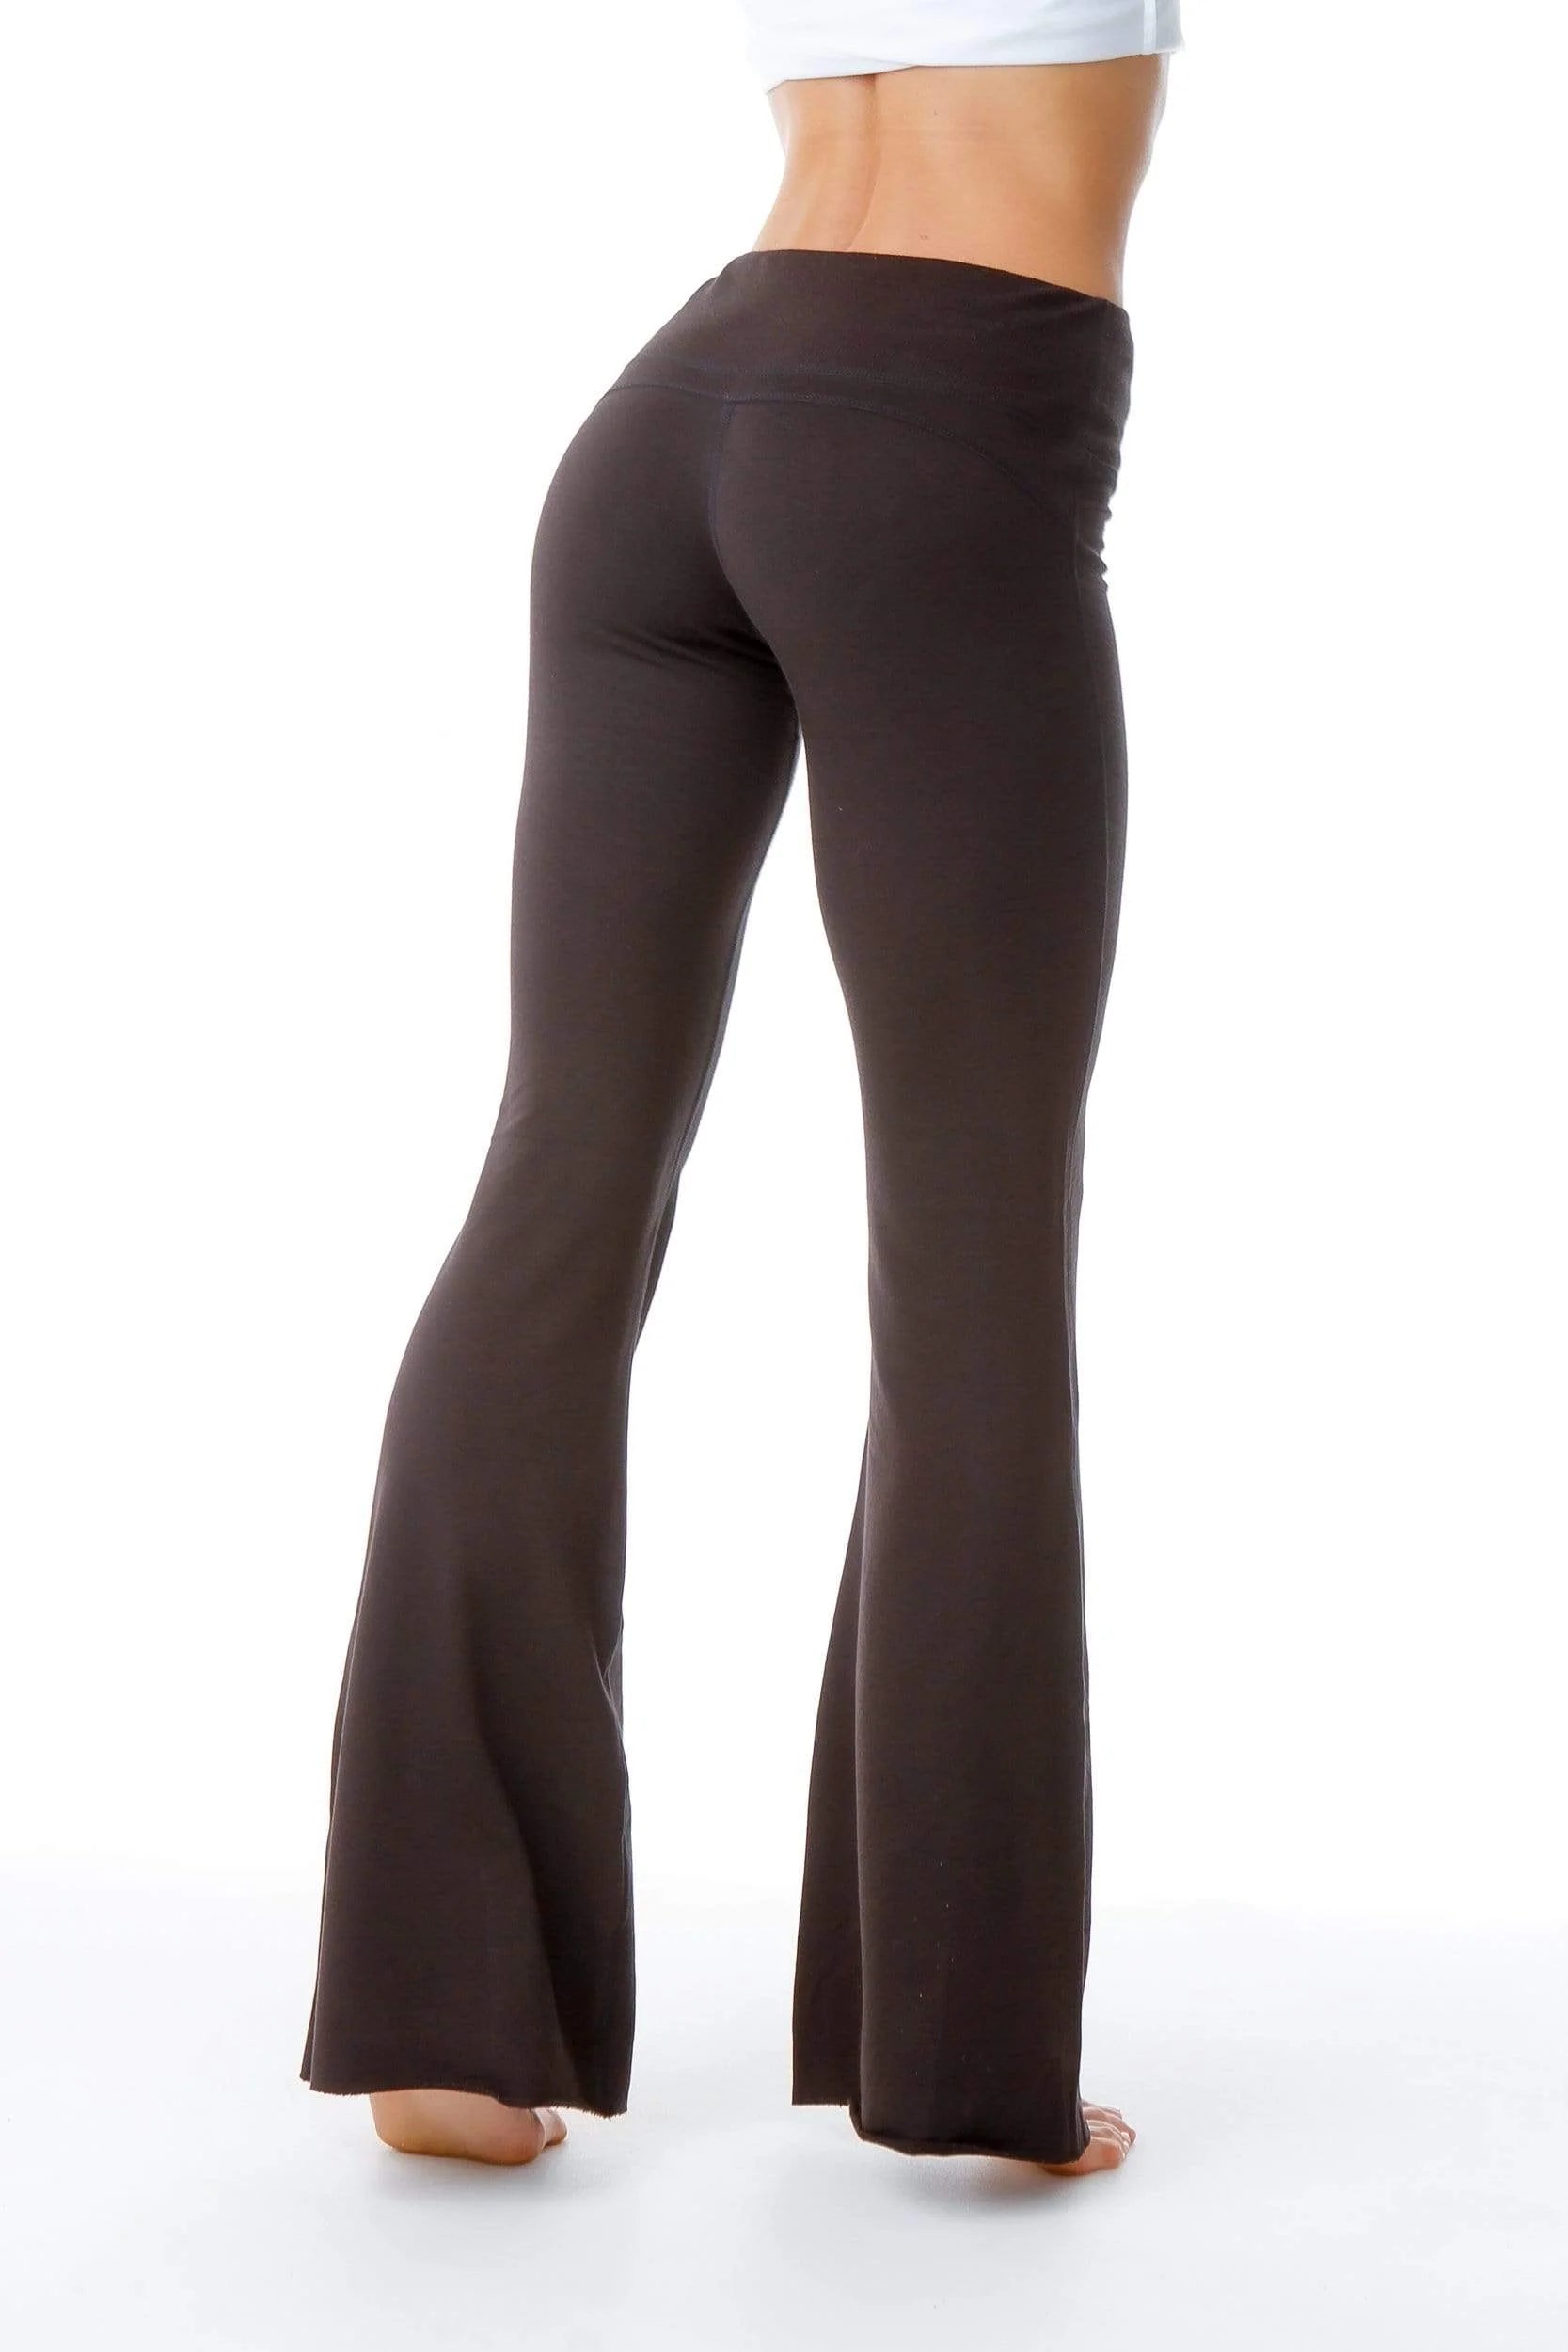 Solid Color Micro Lah Wide Leg Printed Womens Yoga Boot Cut Pants